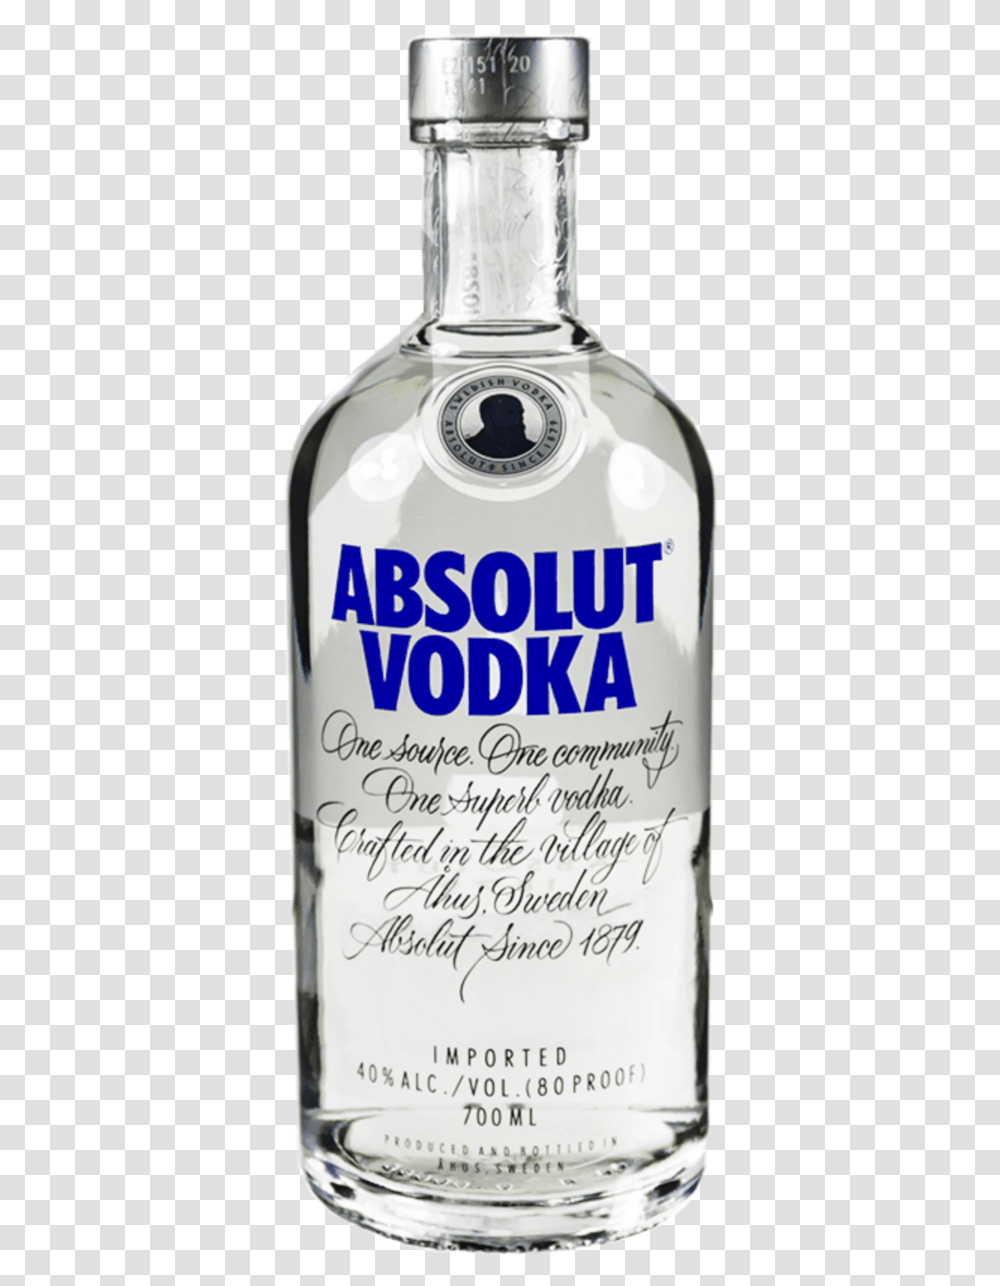 Vodka Absolut Swedish Freetoedit, Liquor, Alcohol, Beverage, Drink Transparent Png